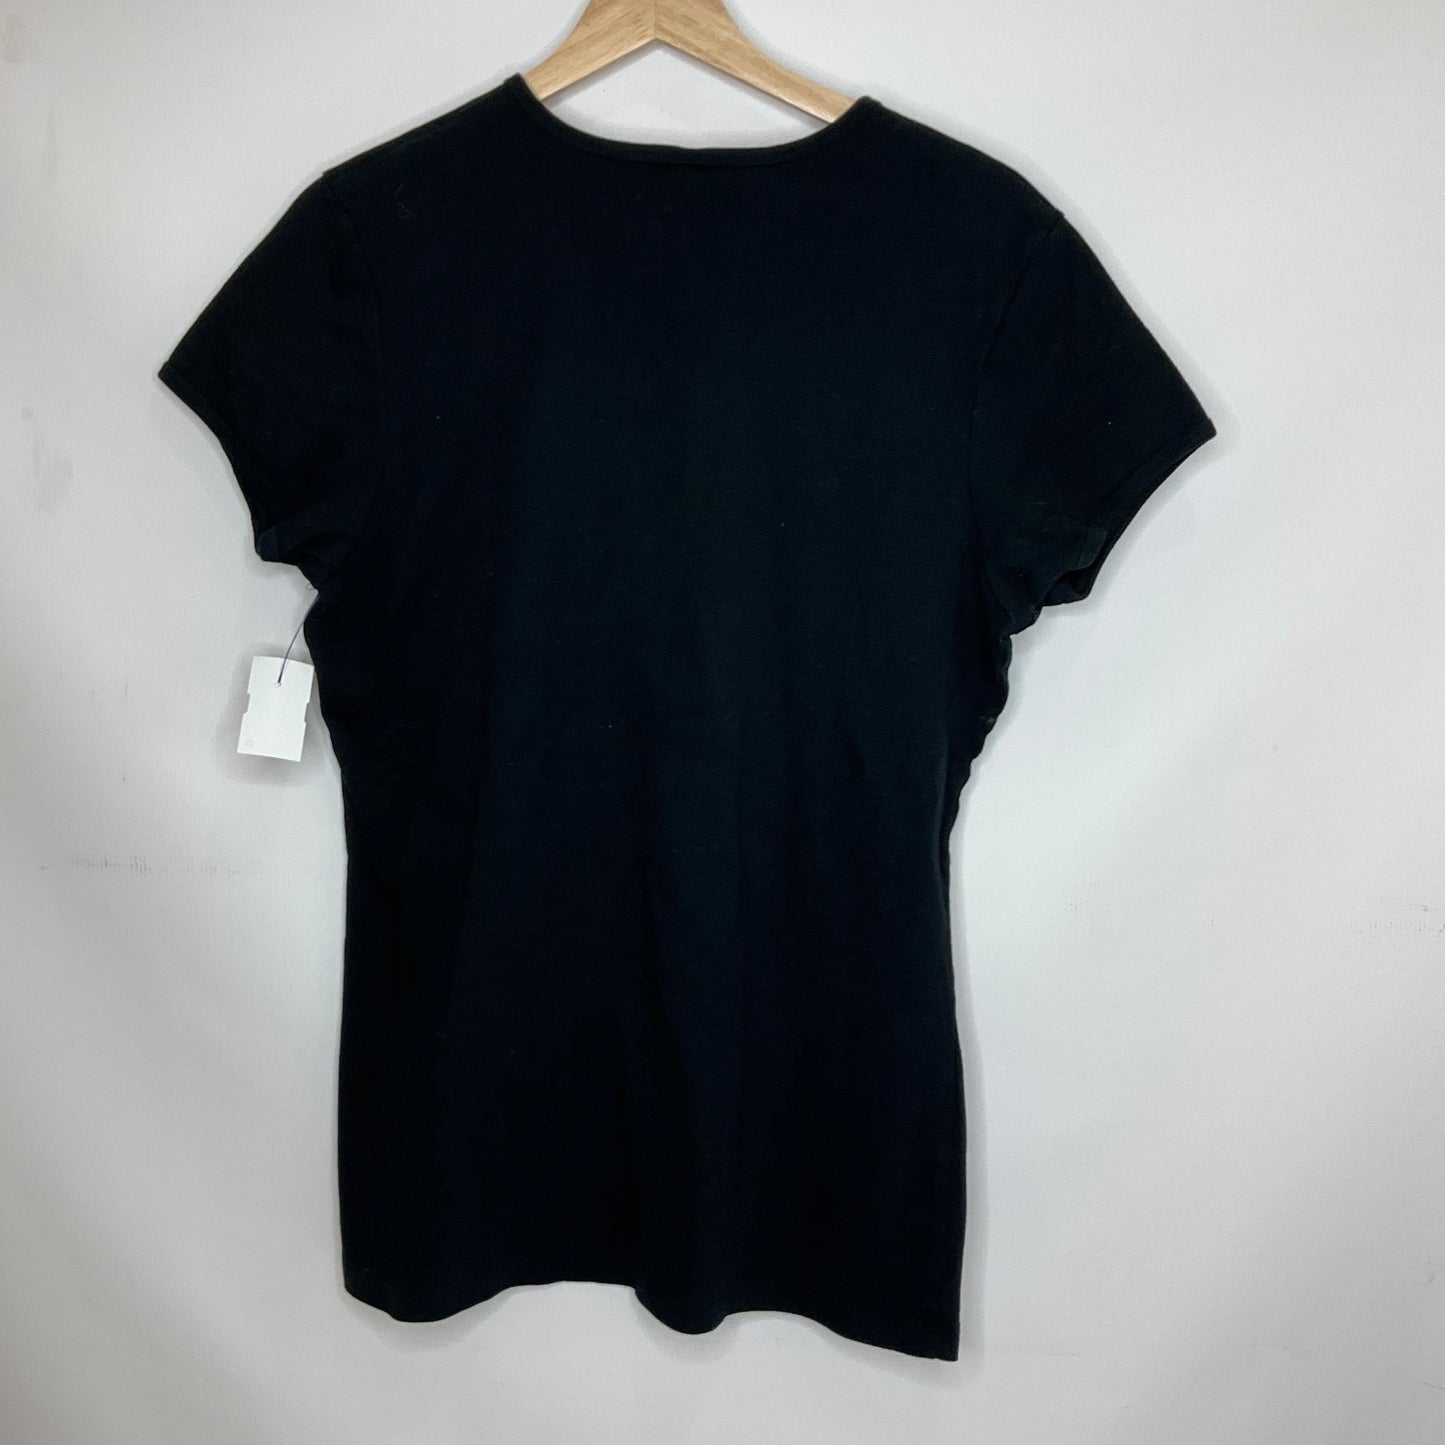 Black Top Short Sleeve Basic Clothes Mentor, Size Xxl